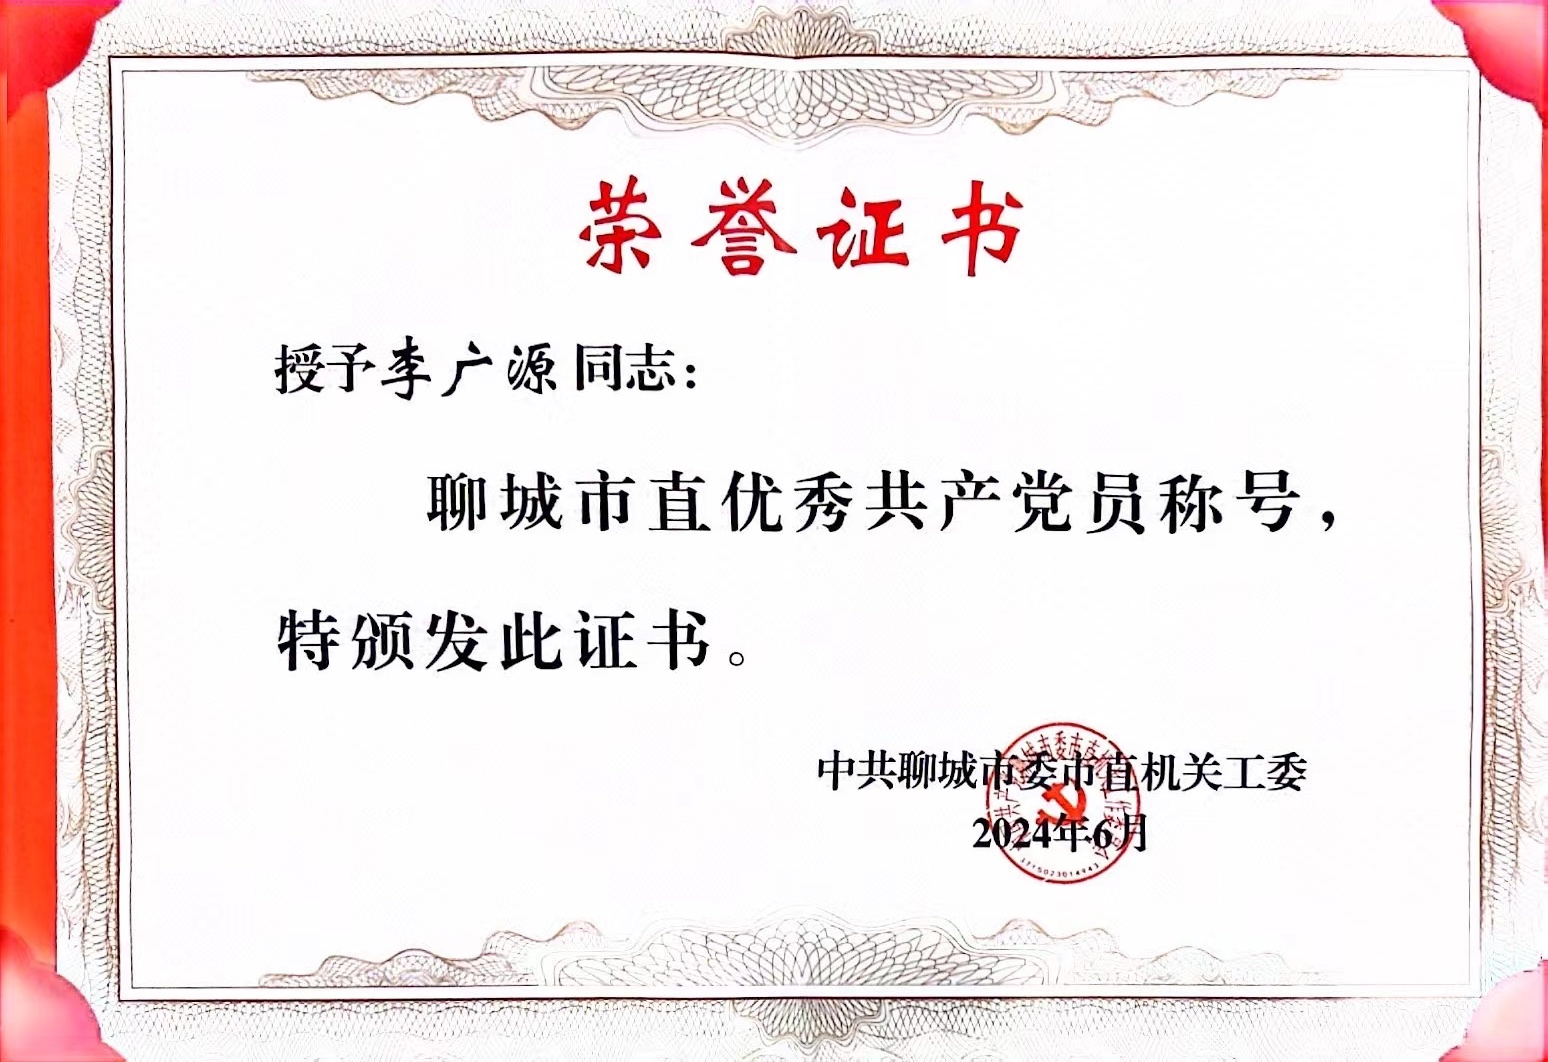 聊城市注册会计师行业党总支党员李广源同志被评为“市直优秀共产党员”